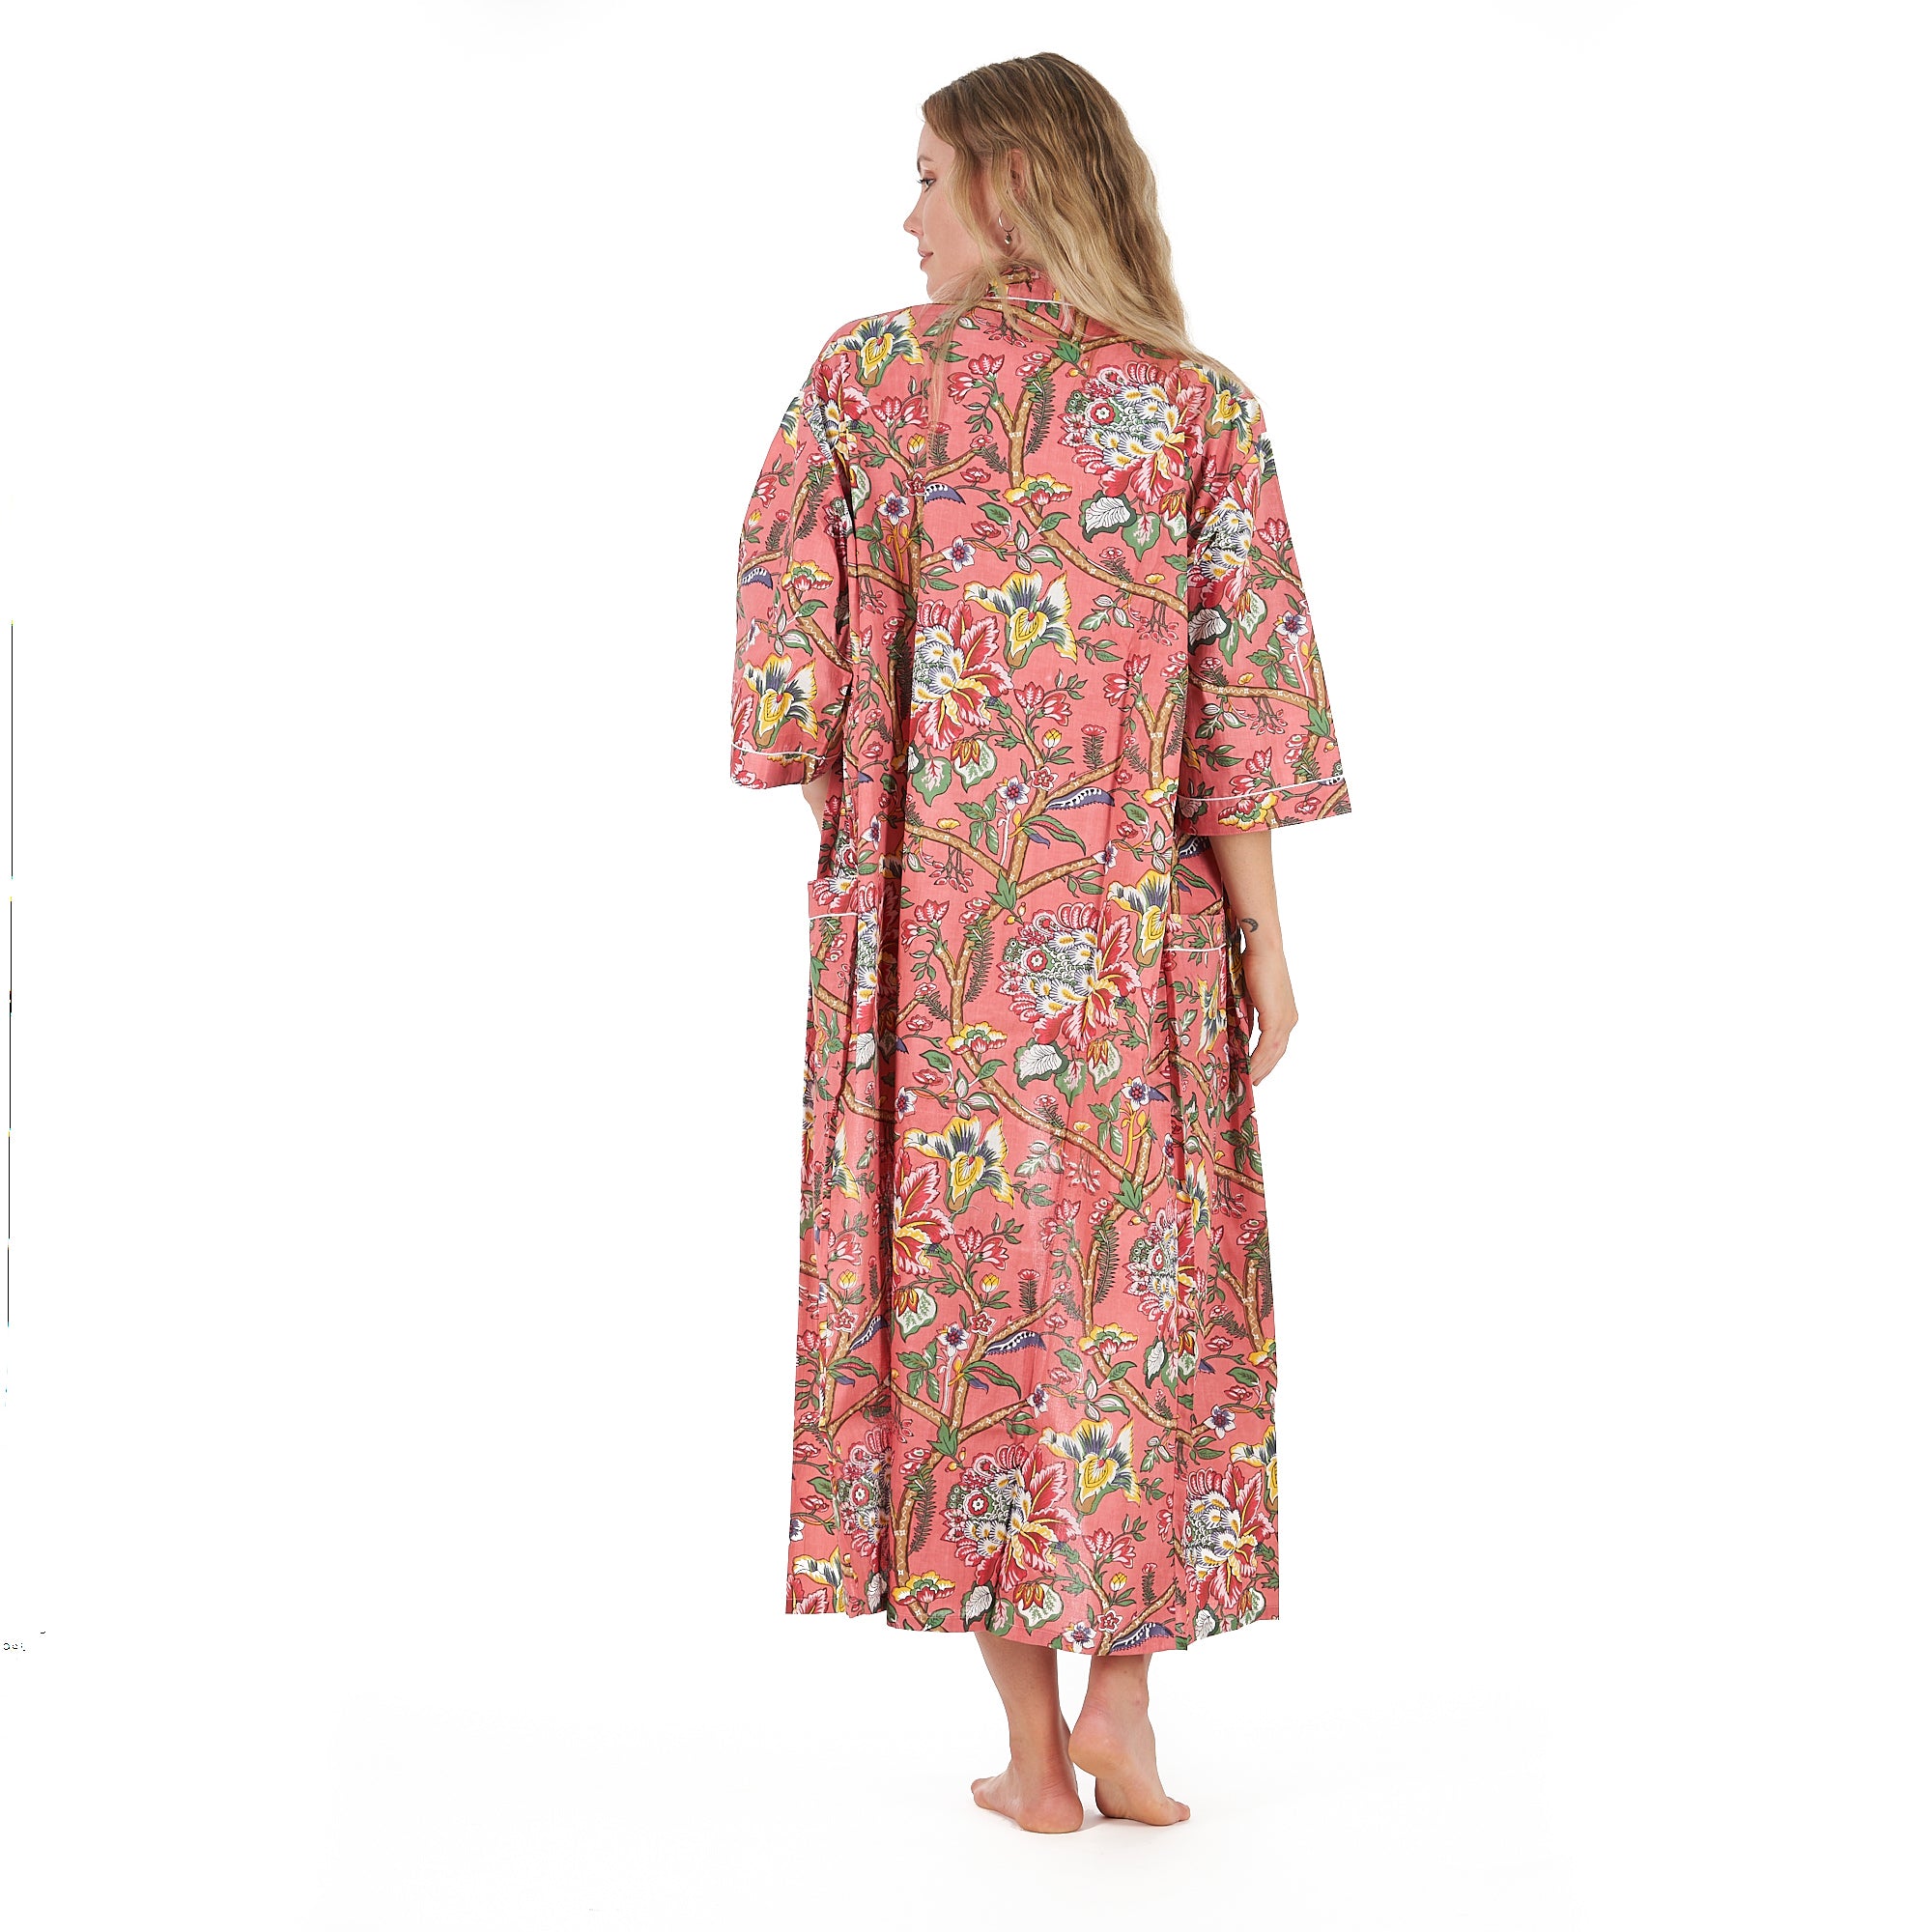 'Floral Splendour' 100% Cotton Kimono Robe